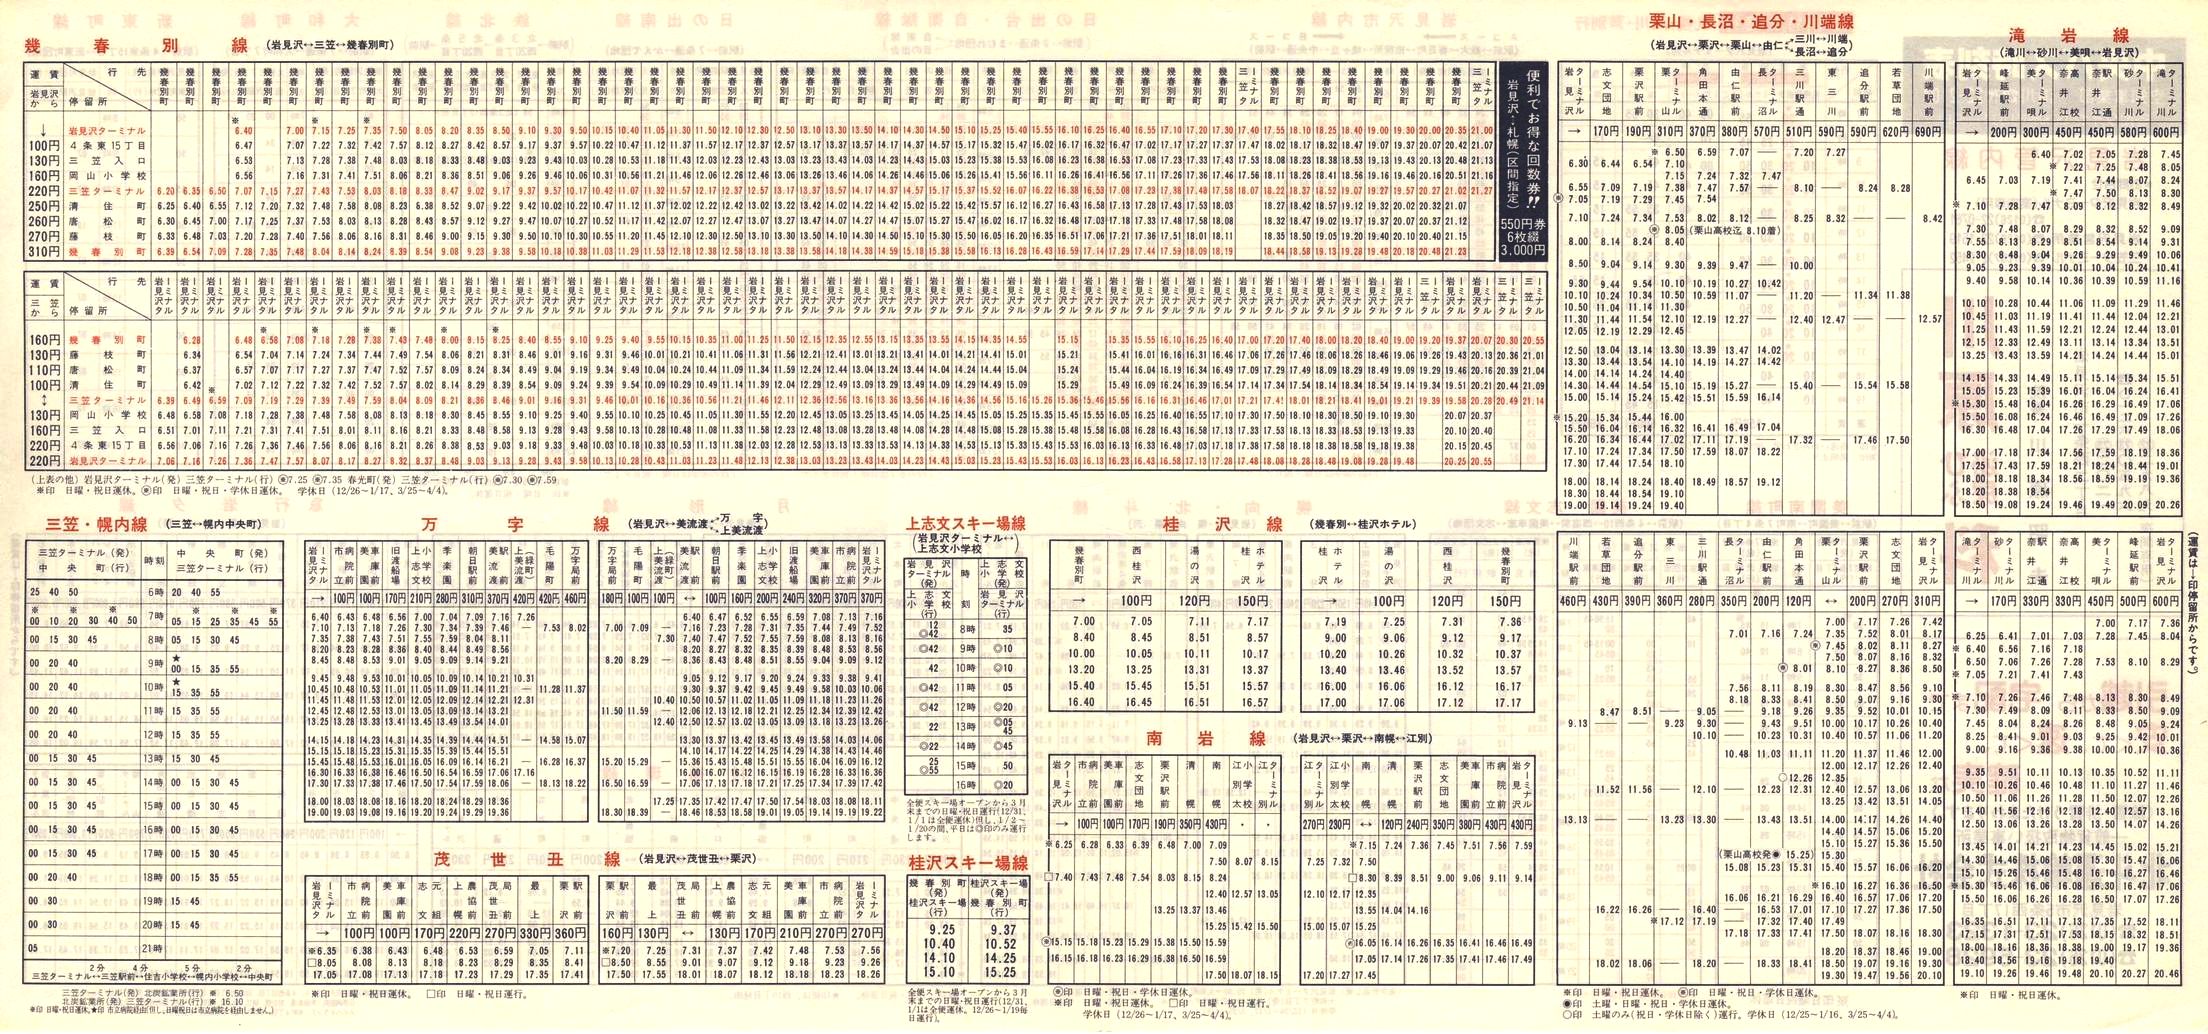 1984-12-01改正_北海道中央バス(空知)_岩見沢管内線時刻表裏面